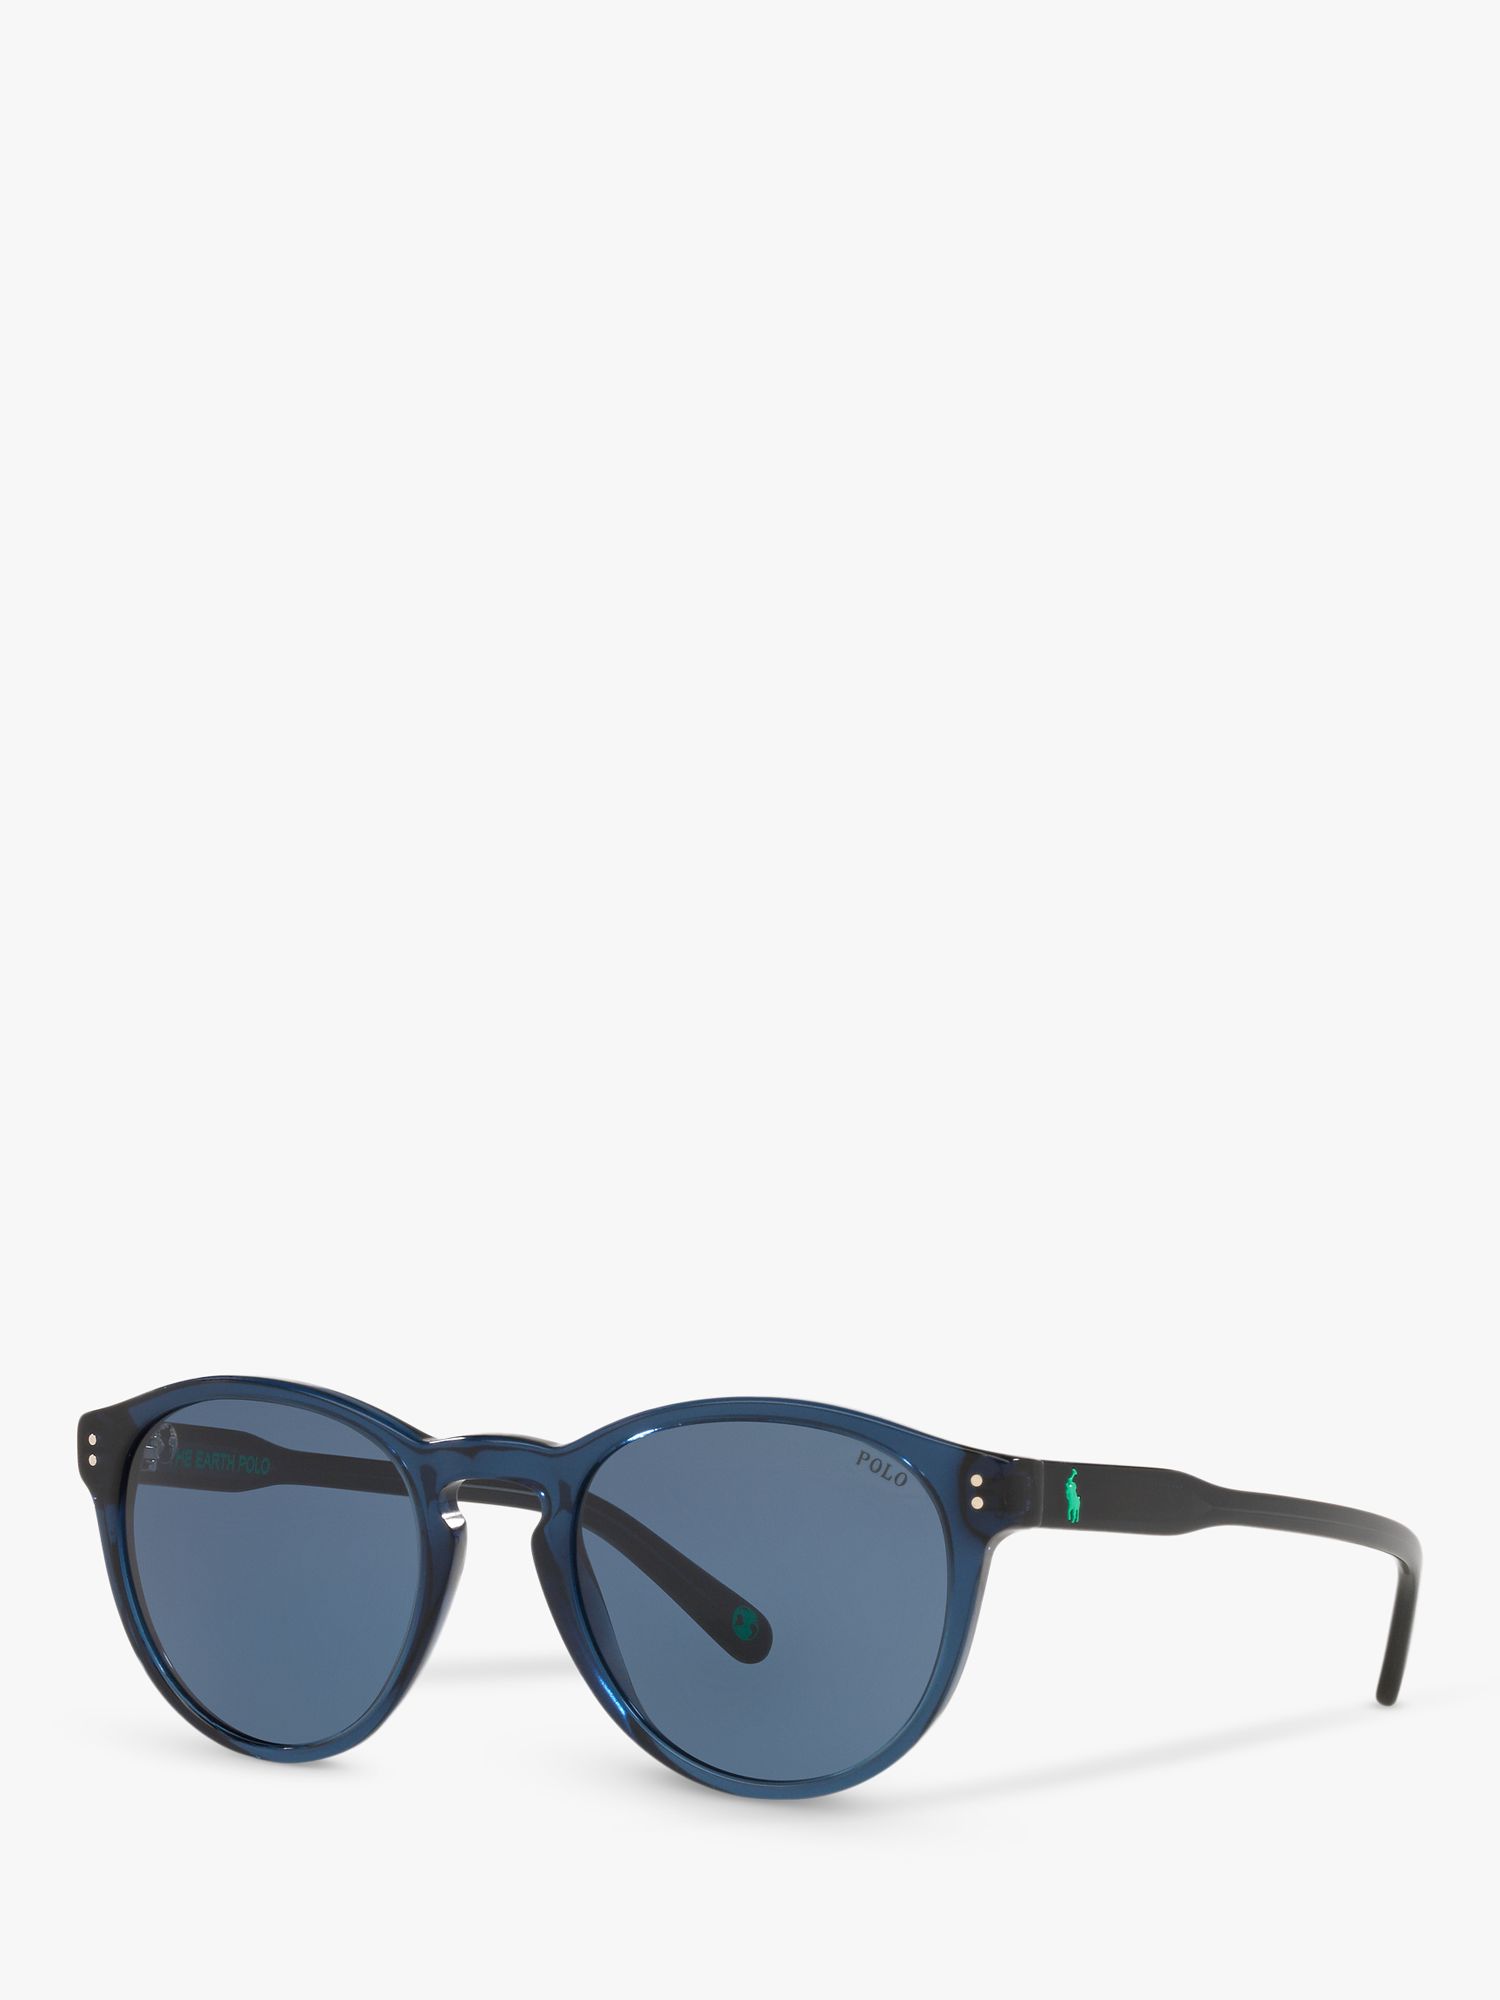 Мужские овальные солнцезащитные очки Ralph Lauren PH4172, синие мужские солнцезащитные очки ph4172 50 polo ralph lauren